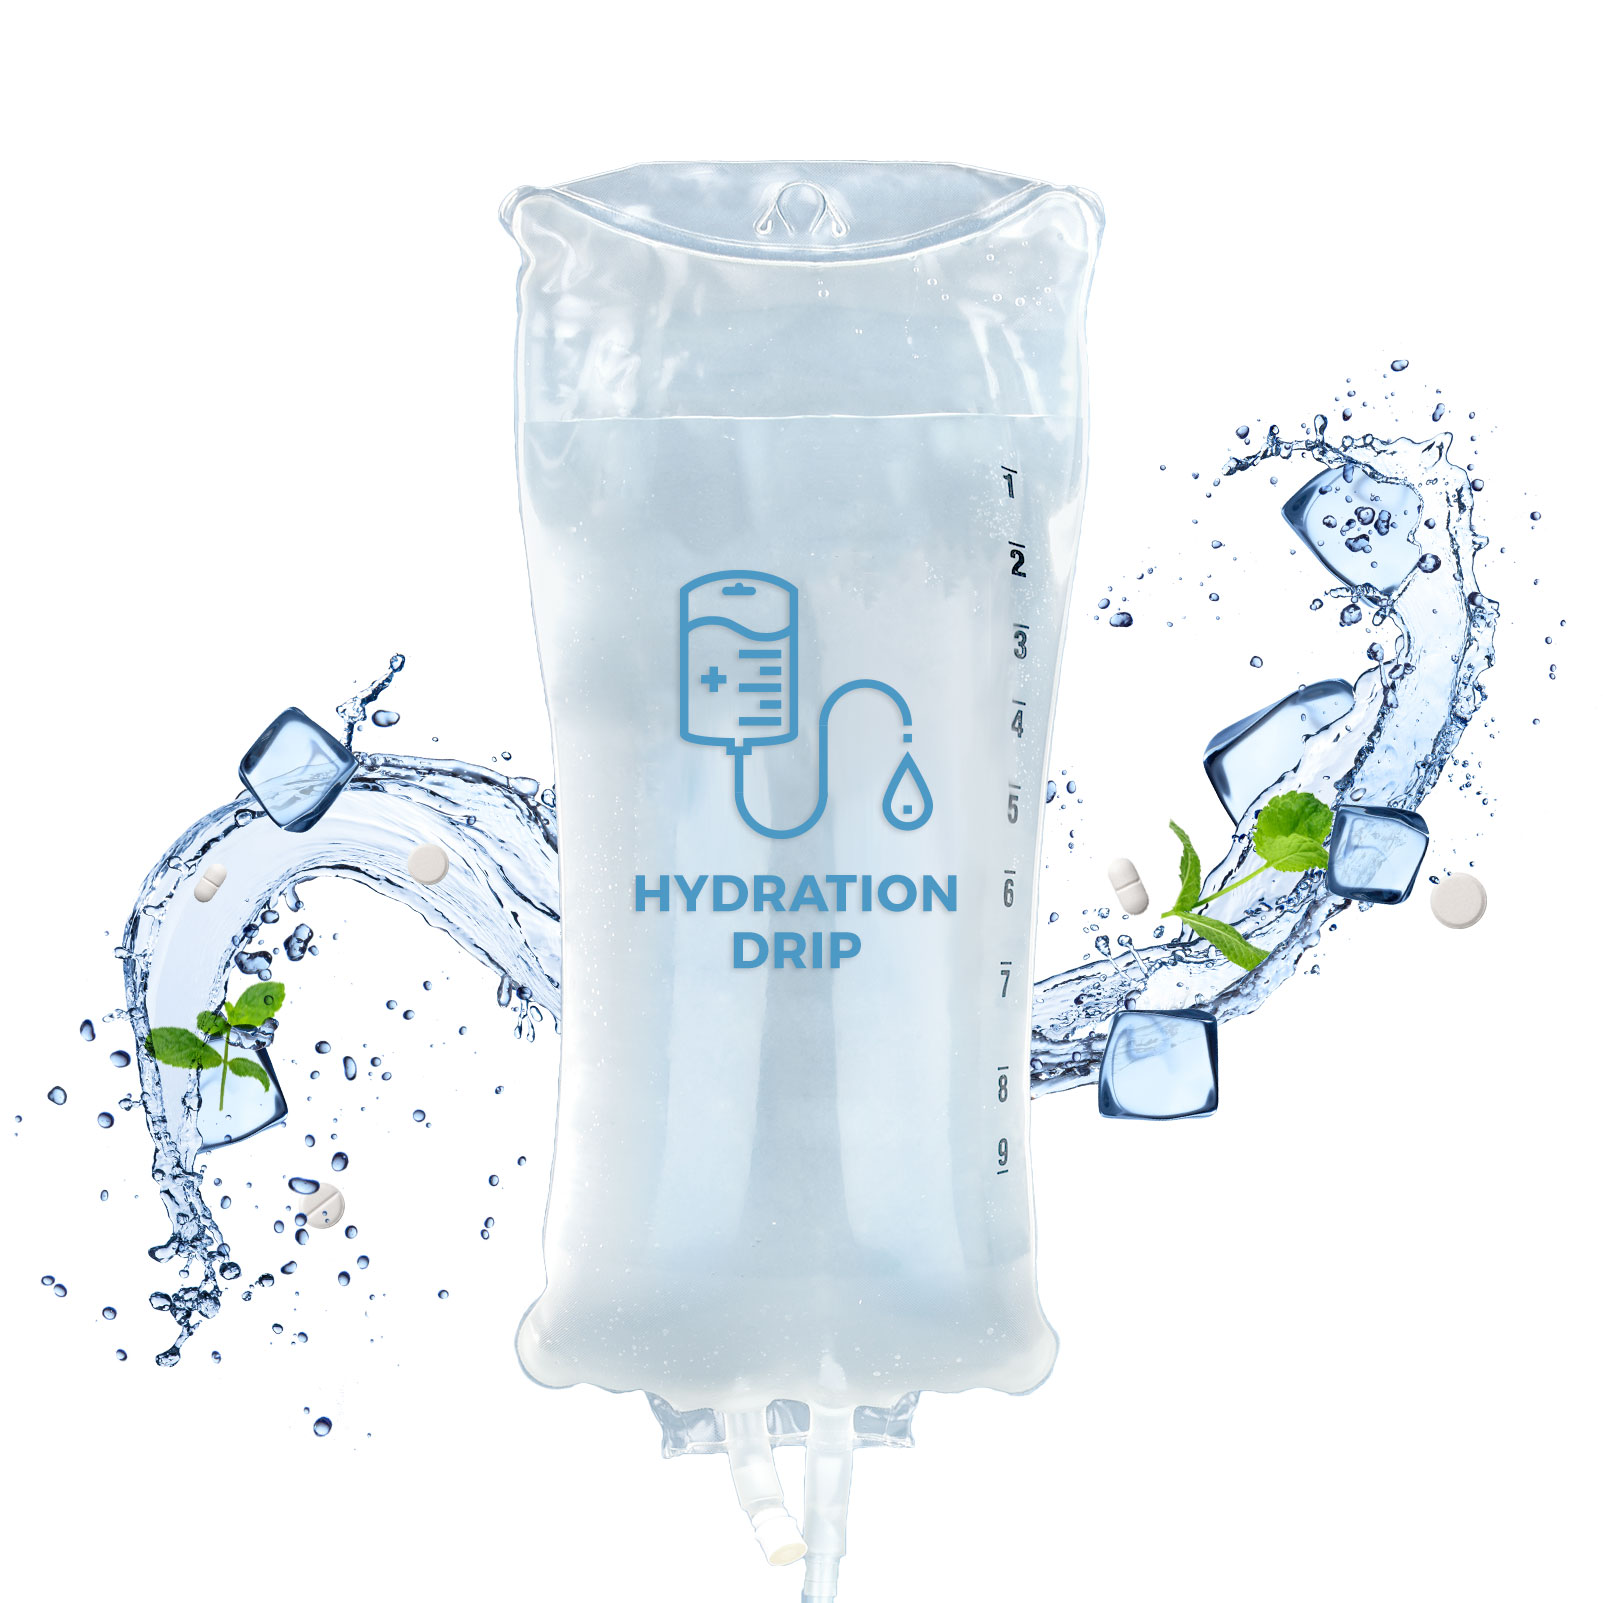 Hydration IV Drip